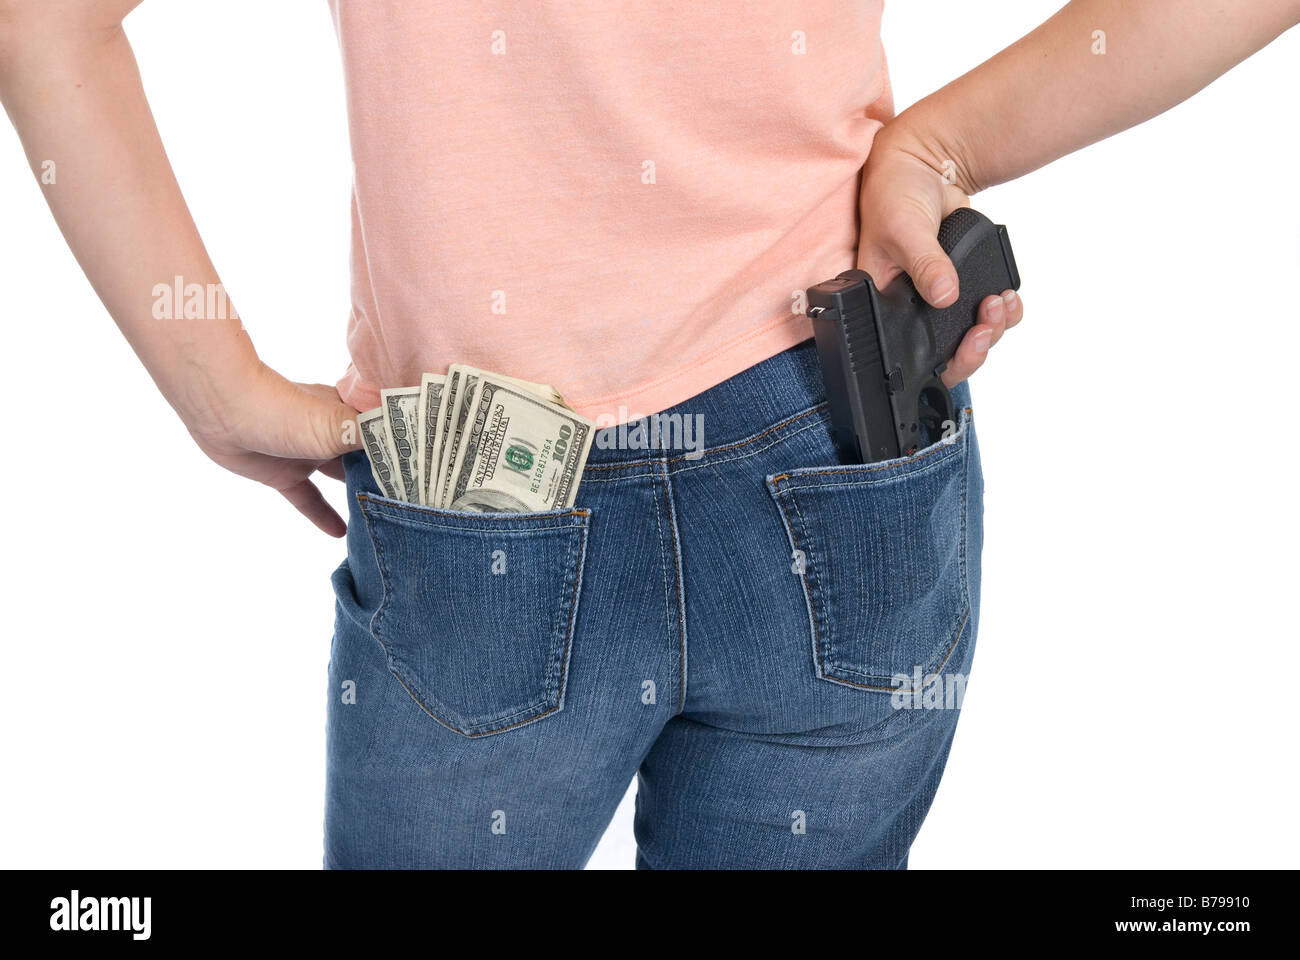 Une femme est prête à défendre sa caisse avec un pistolet semi-automatique Banque D'Images